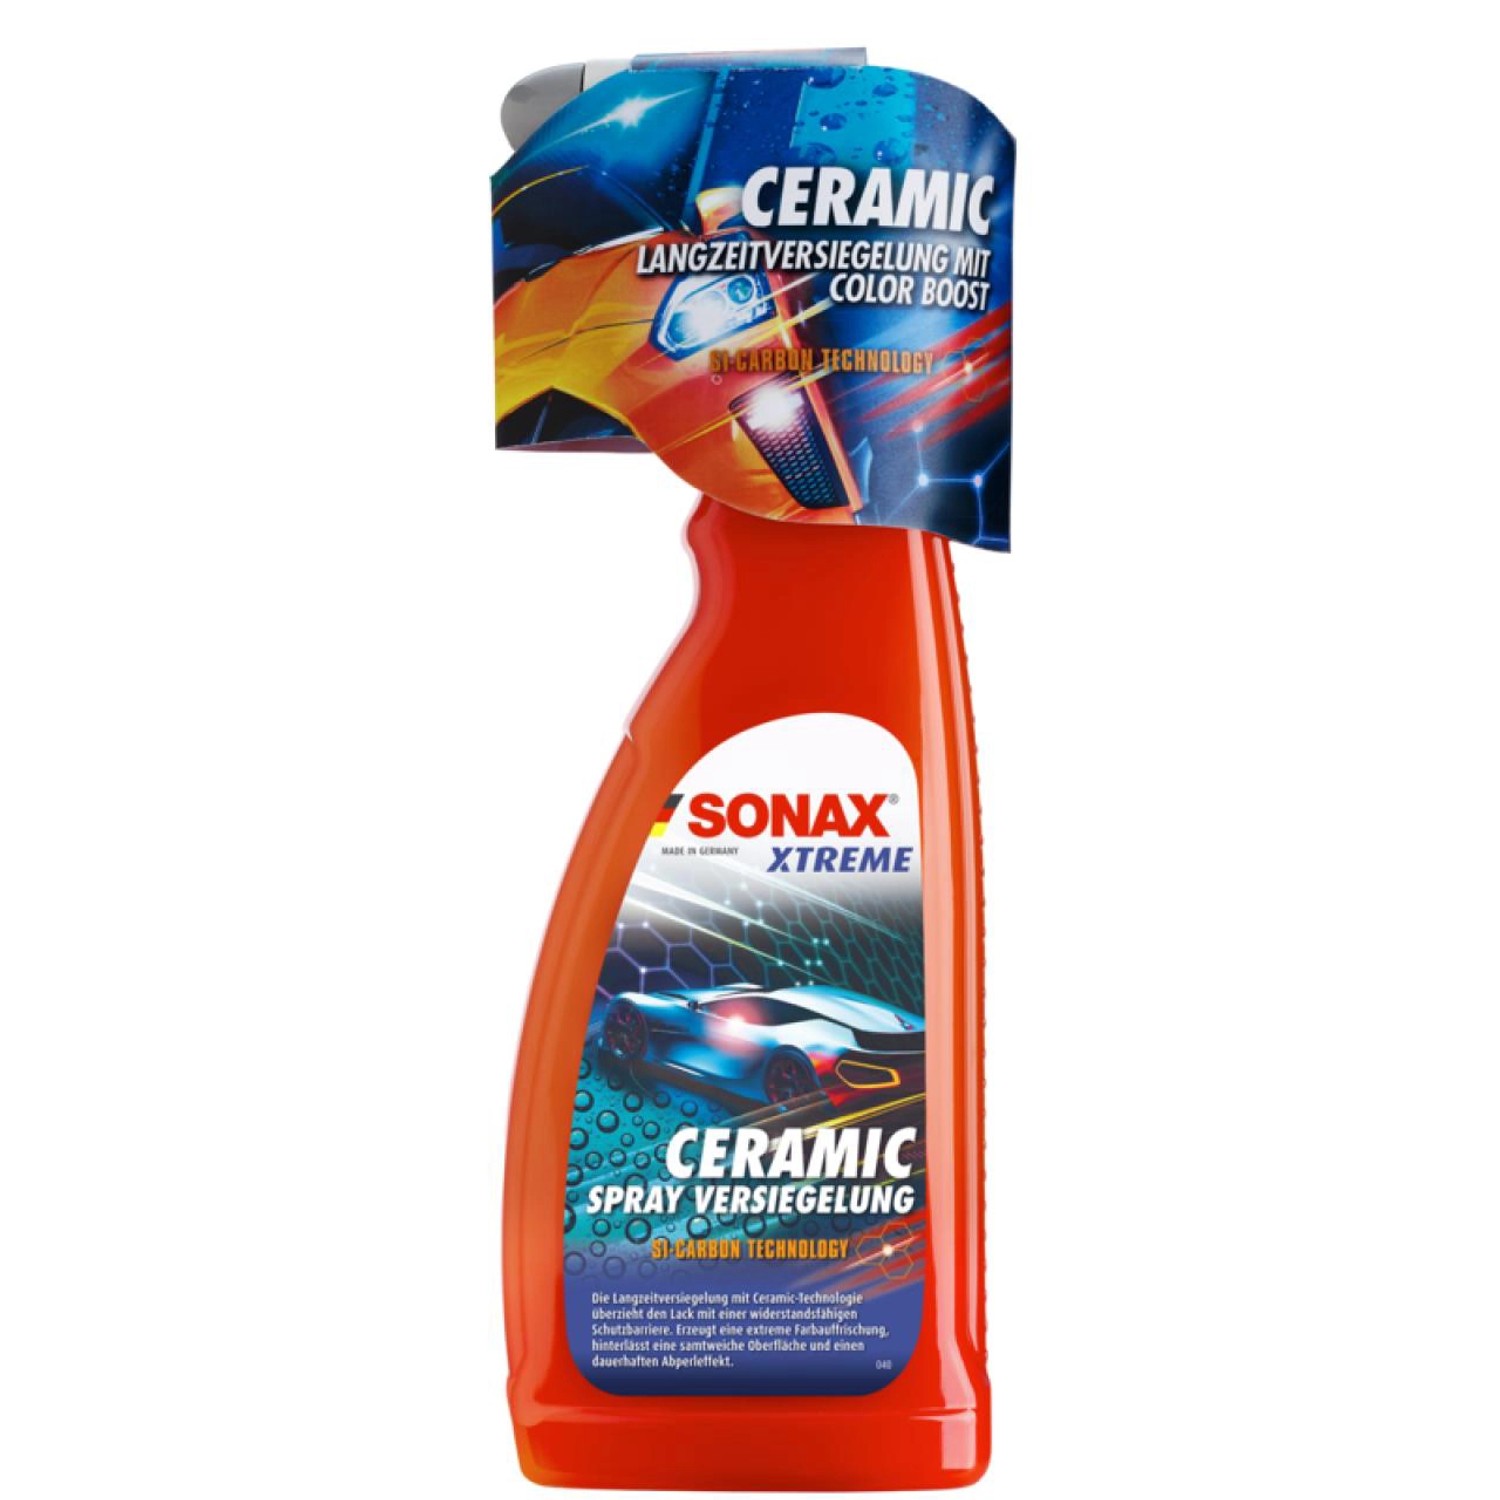 Sonax Xtreme Ceramic Spray-Versiegelung 750 ml